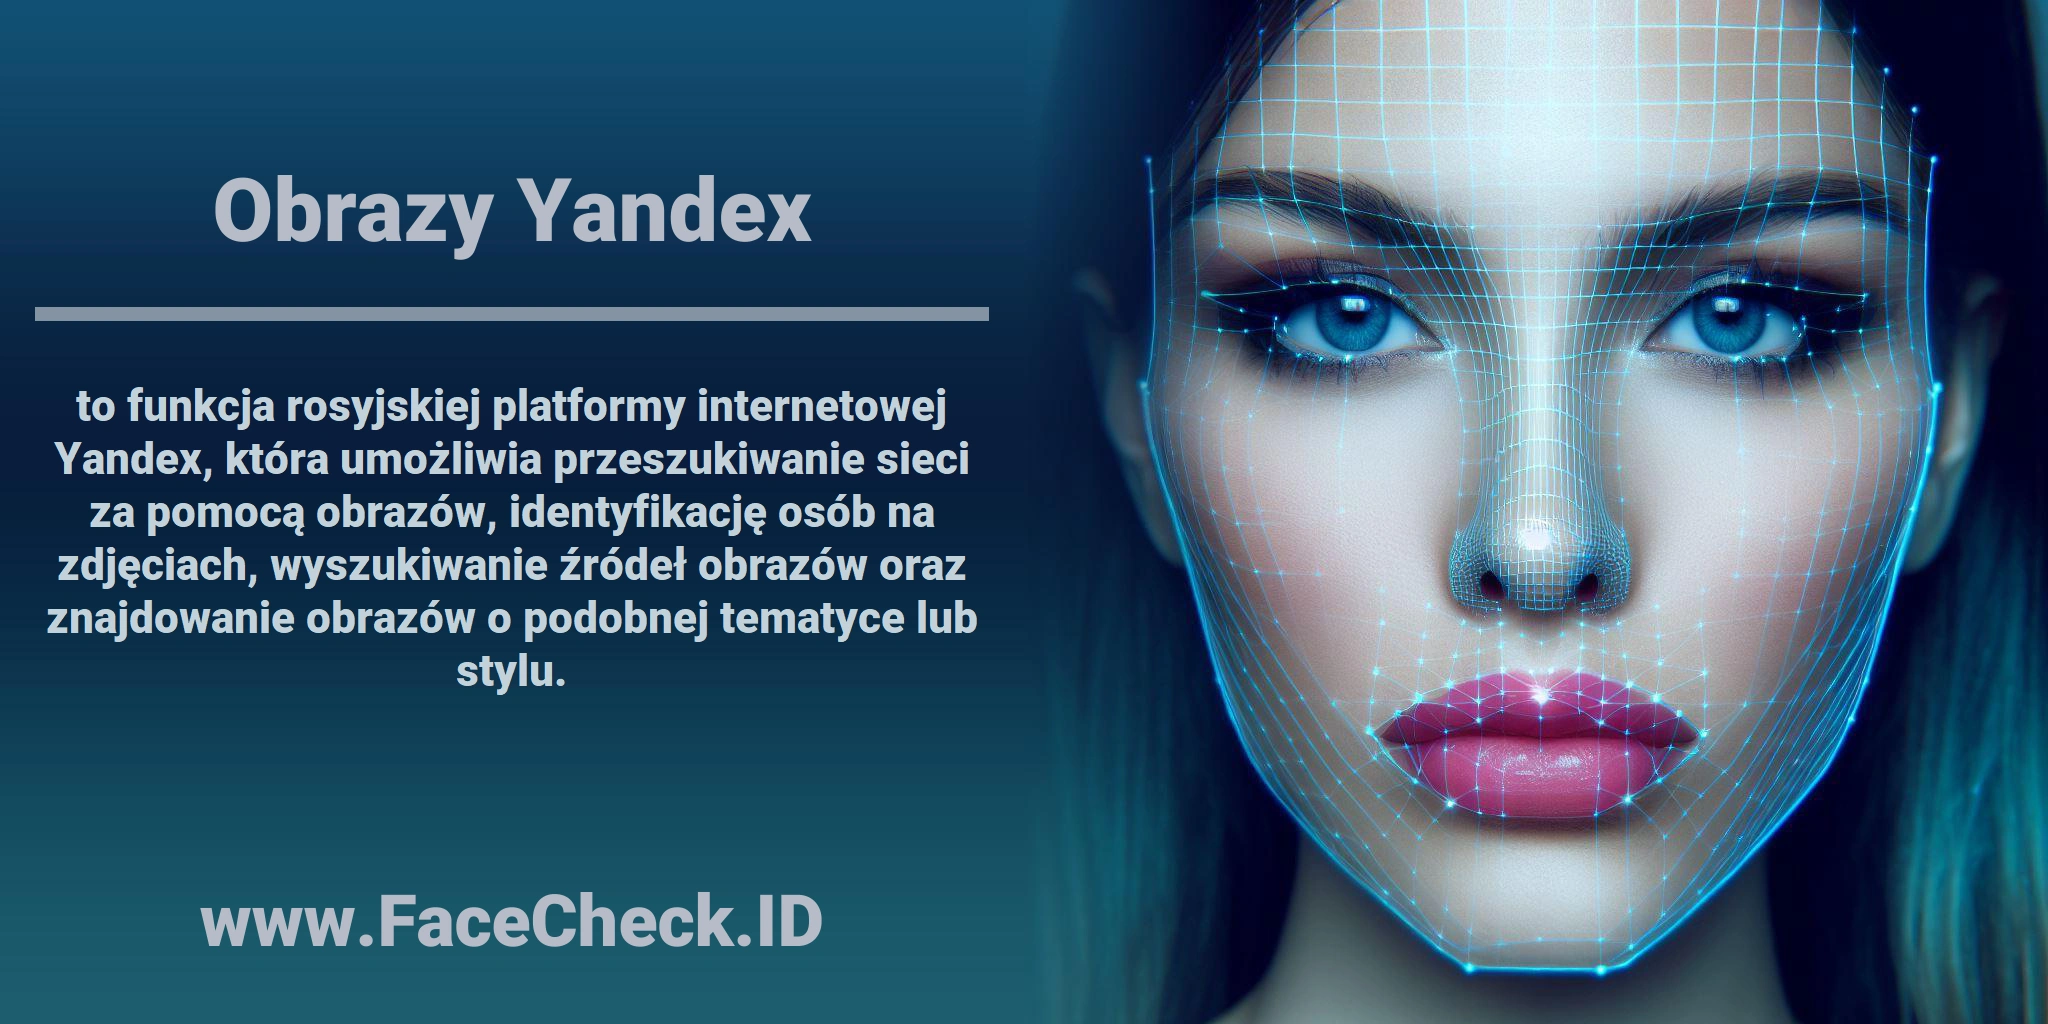 <b>Obrazy Yandex</b> to funkcja rosyjskiej platformy internetowej Yandex, która umożliwia przeszukiwanie sieci za pomocą obrazów, identyfikację osób na zdjęciach, wyszukiwanie źródeł obrazów oraz znajdowanie obrazów o podobnej tematyce lub stylu.